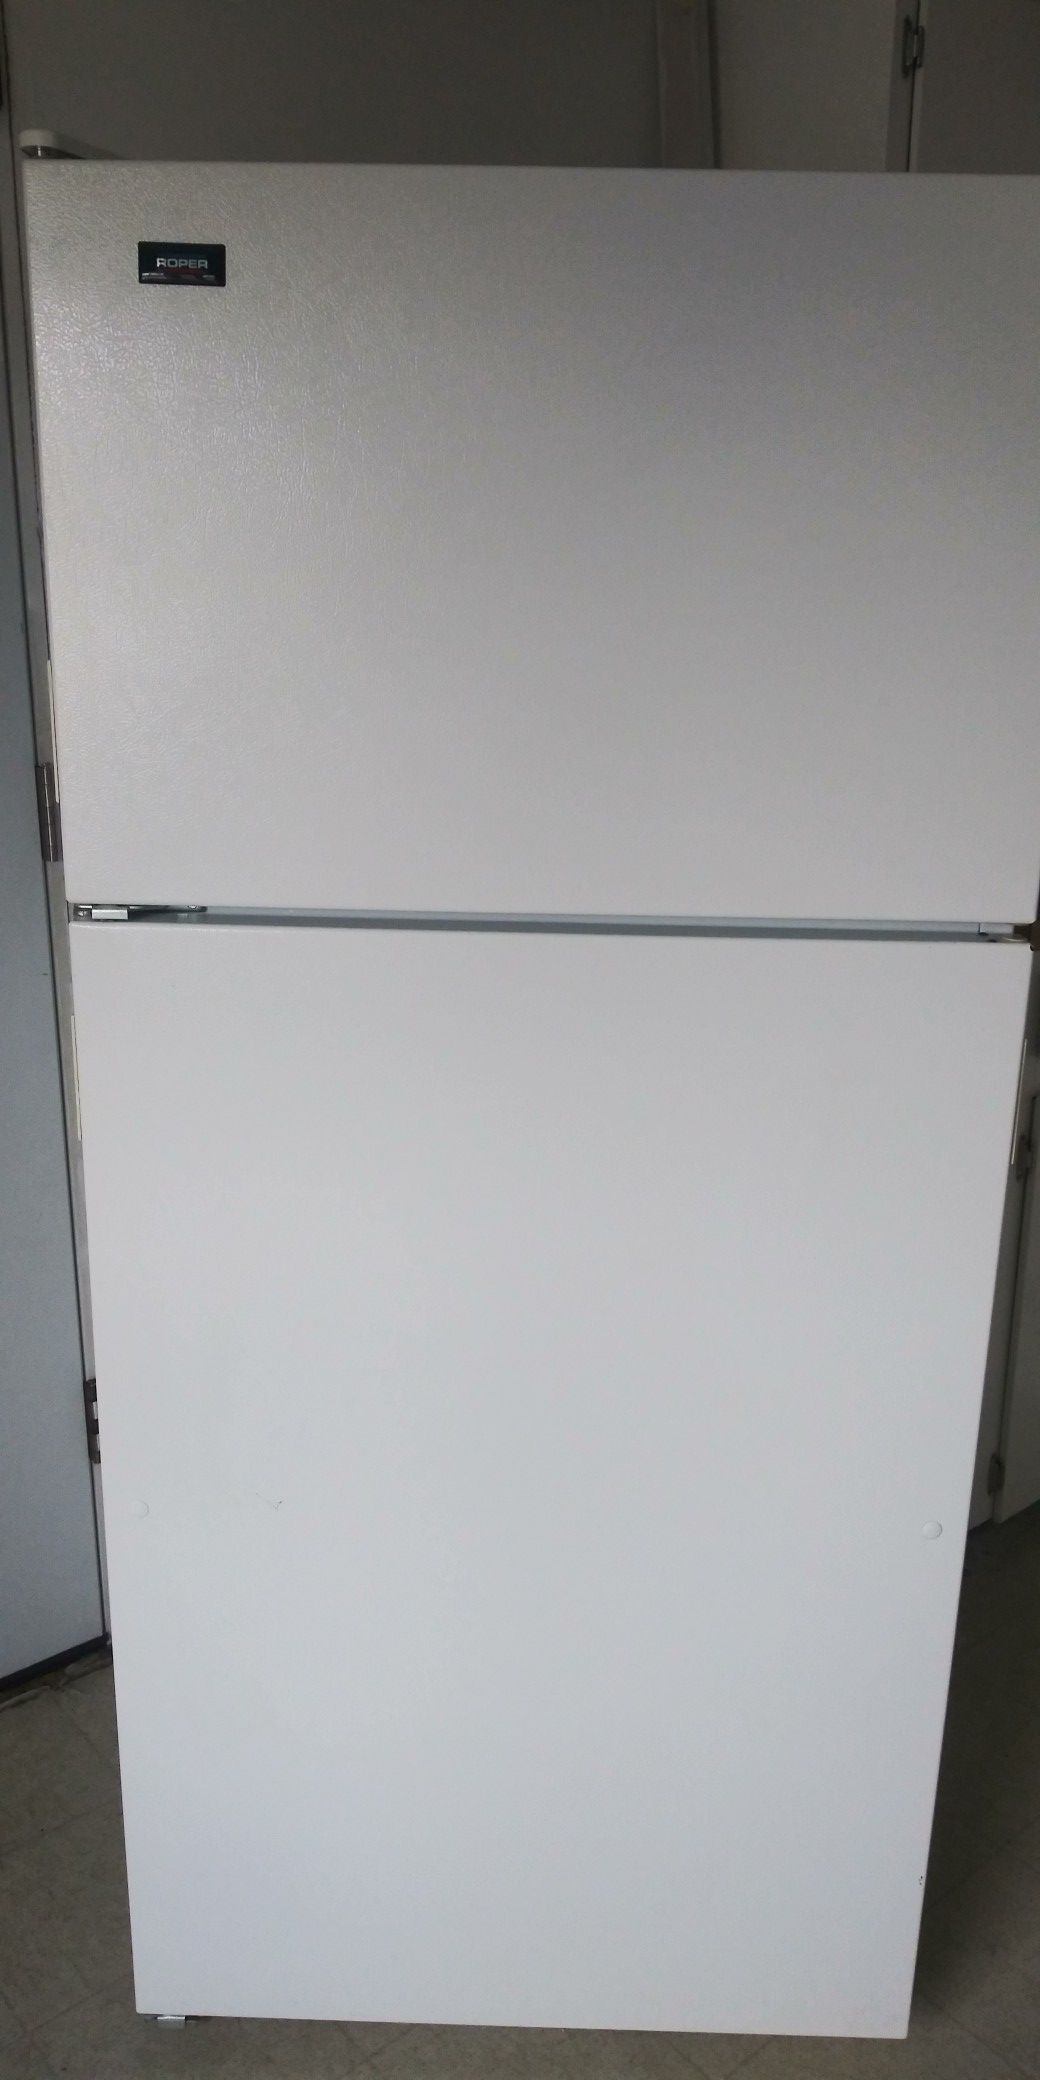 Roper fridge